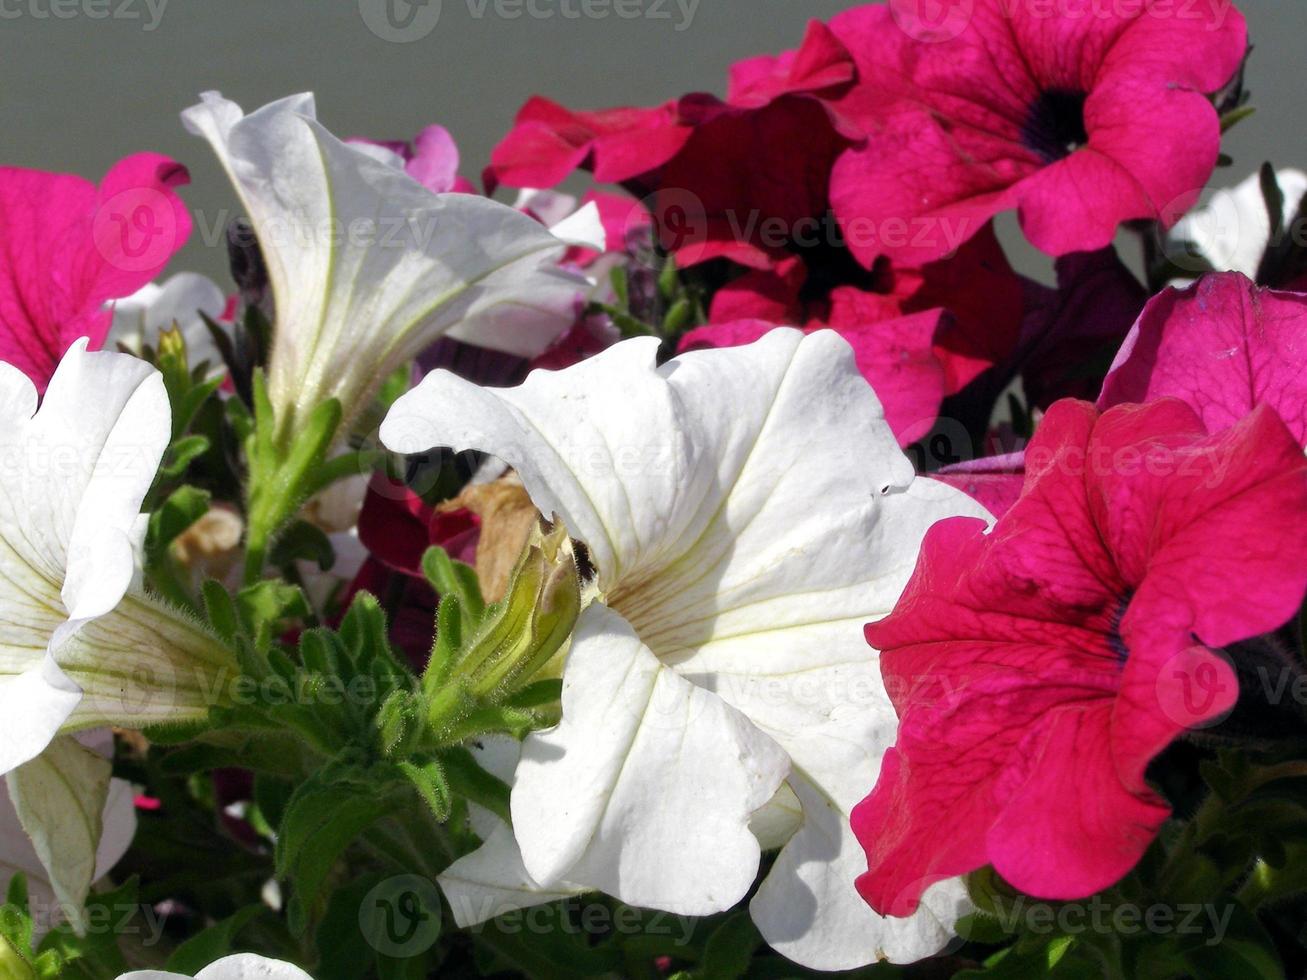 petúnia planta petúnia atkinsiana flor rosa e branca foto